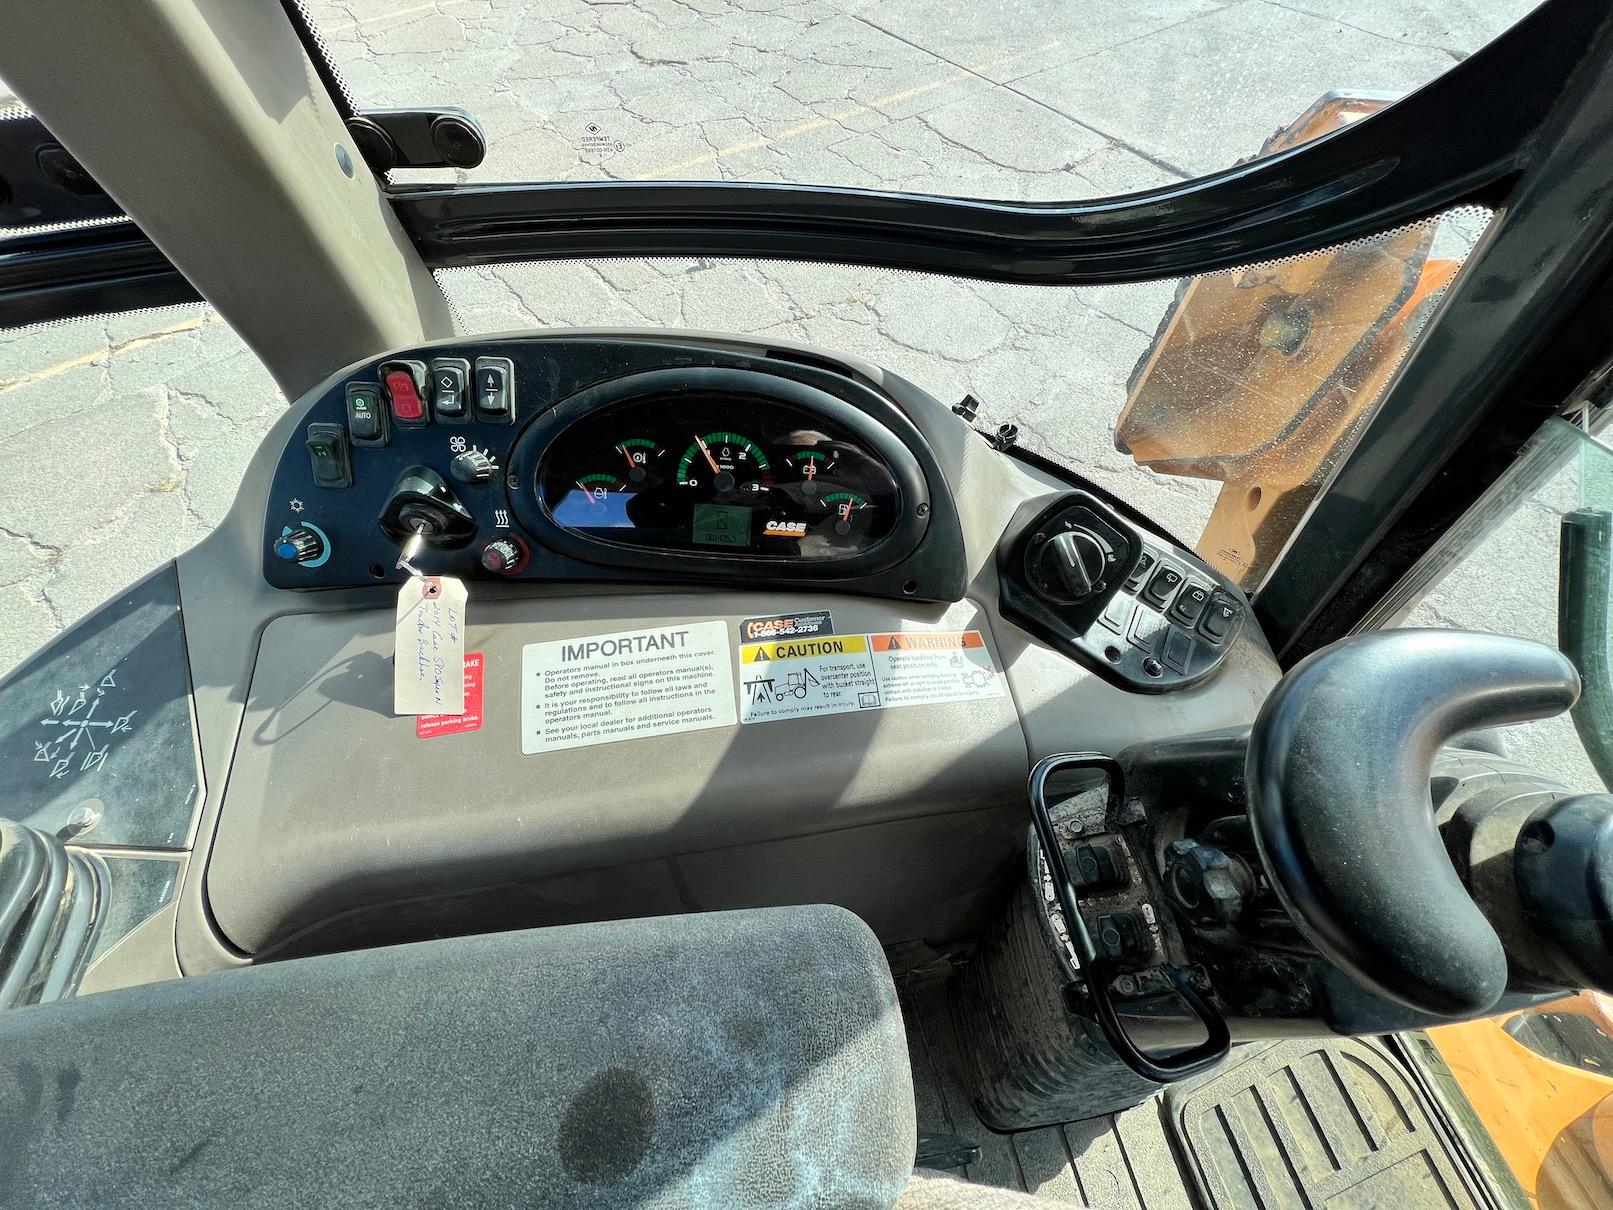 2014 Case 580 Super N MFWD Tractor Loader Backhoe